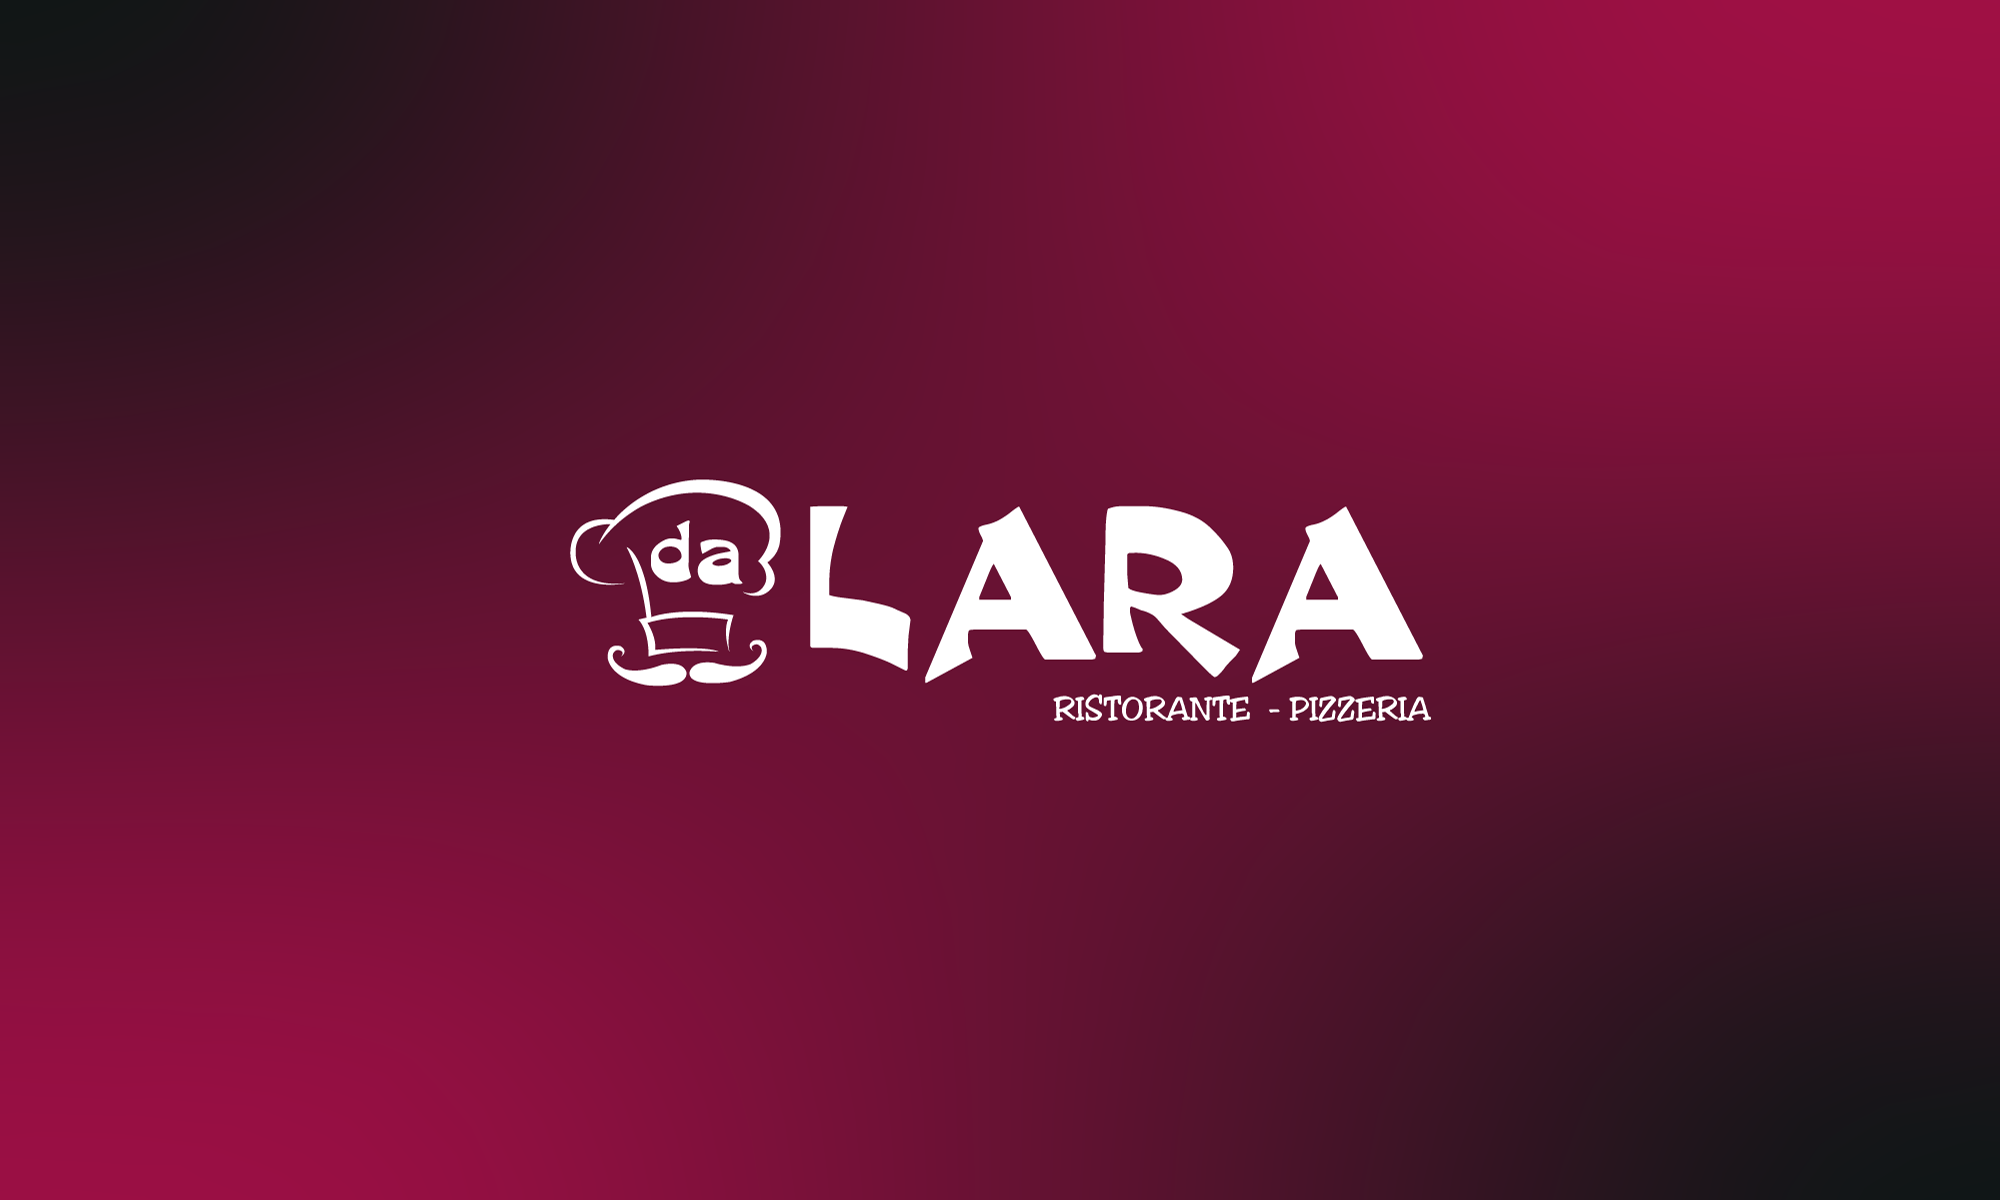 Da Lara